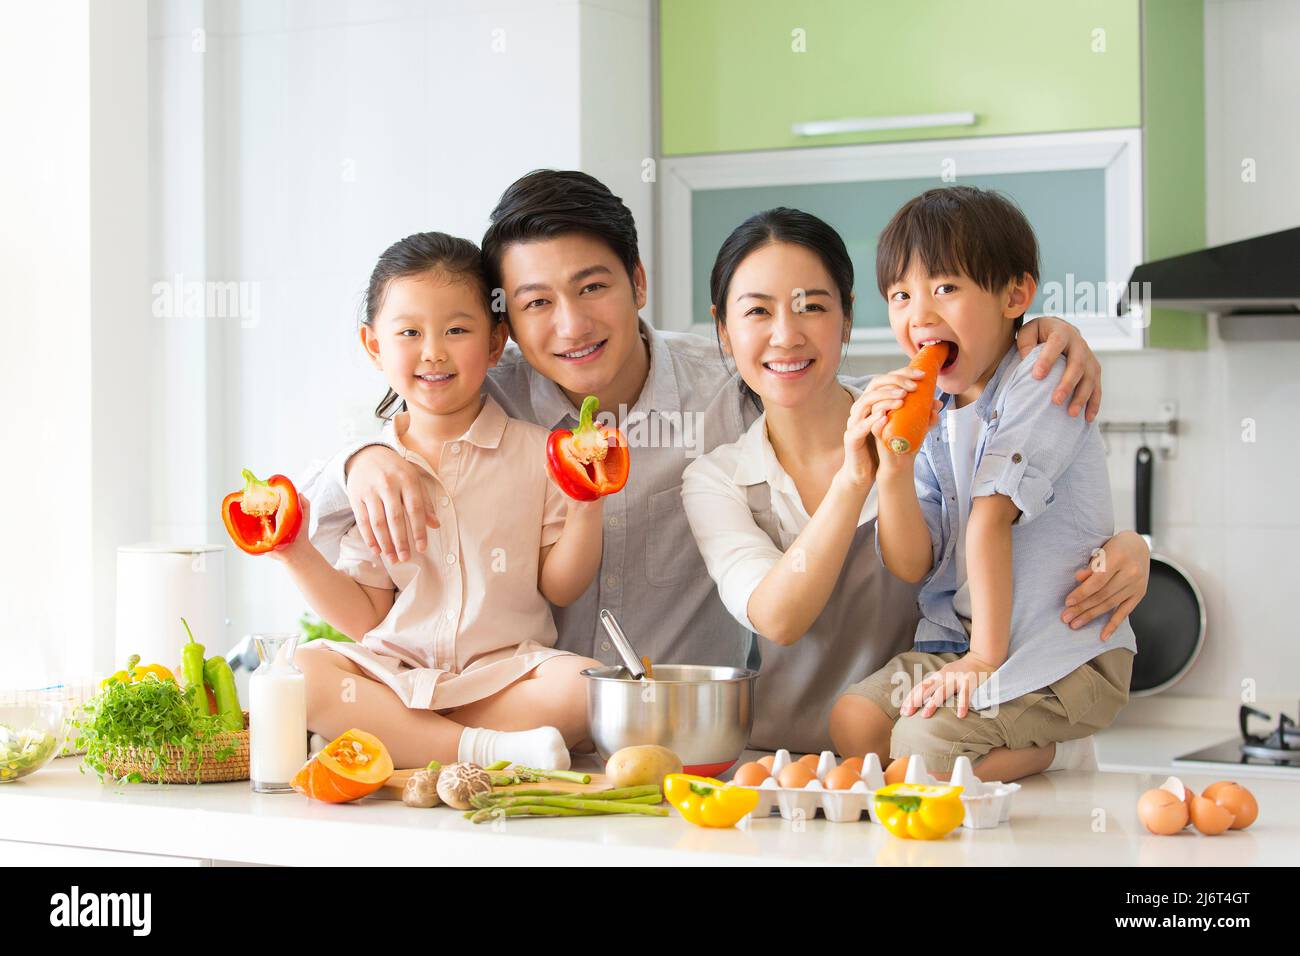 Famiglia cucina parentage. I giovani genitori giocano con due preschoolers, che si siedono sul banco della cucina che mostra le verdure. - foto di scorta Foto Stock